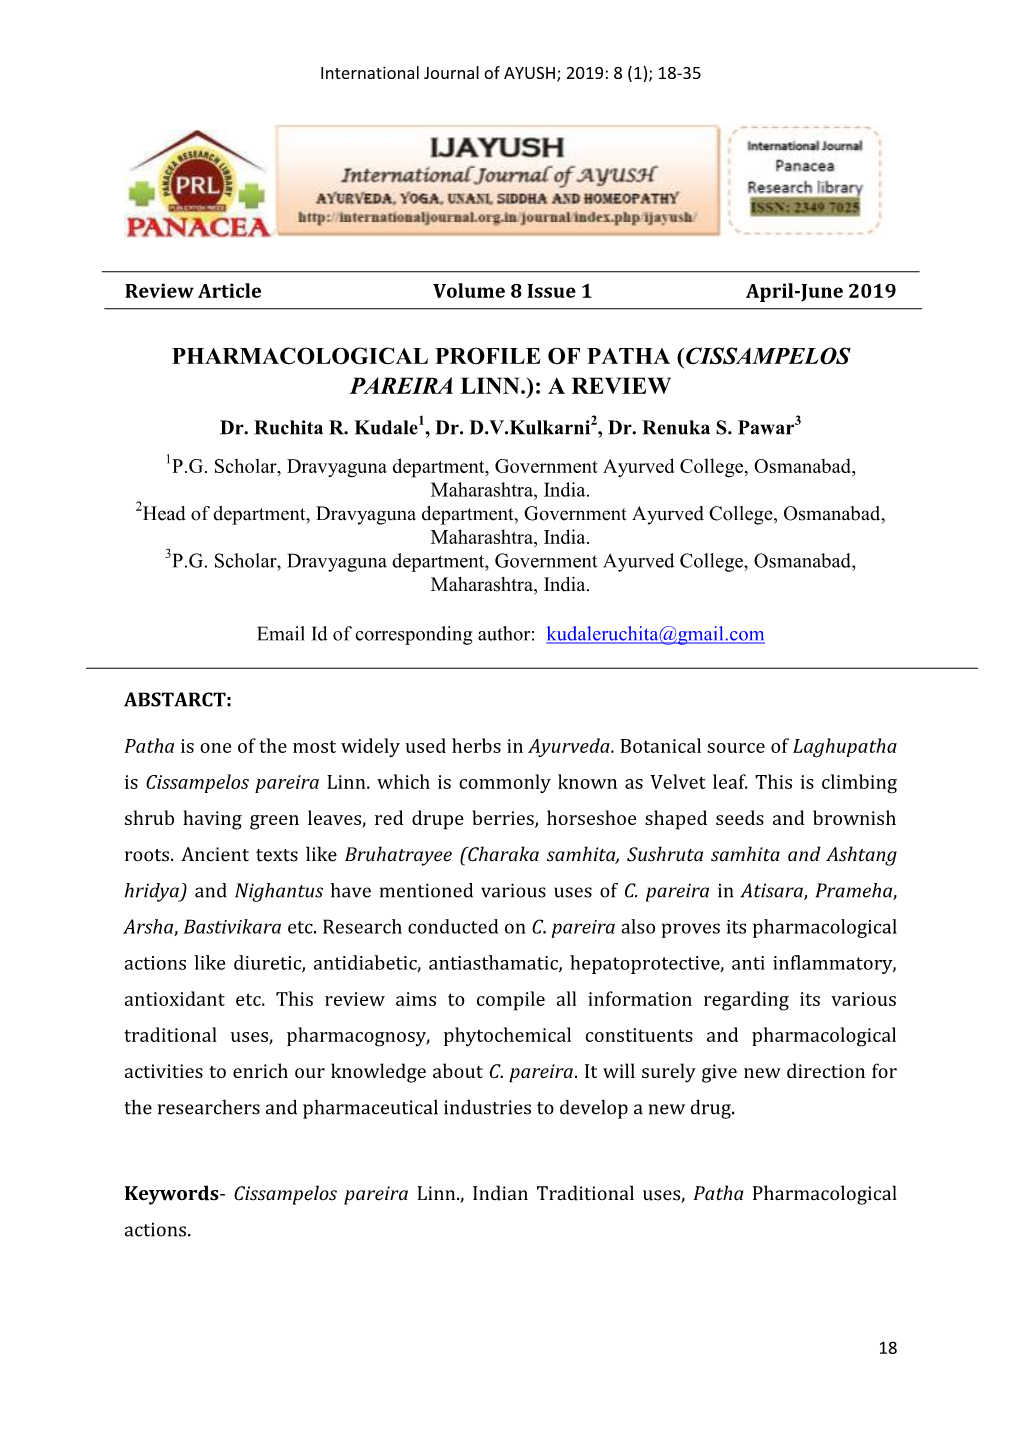 PHARMACOLOGICAL PROFILE of PATHA (CISSAMPELOS PAREIRA LINN.): a REVIEW Dr